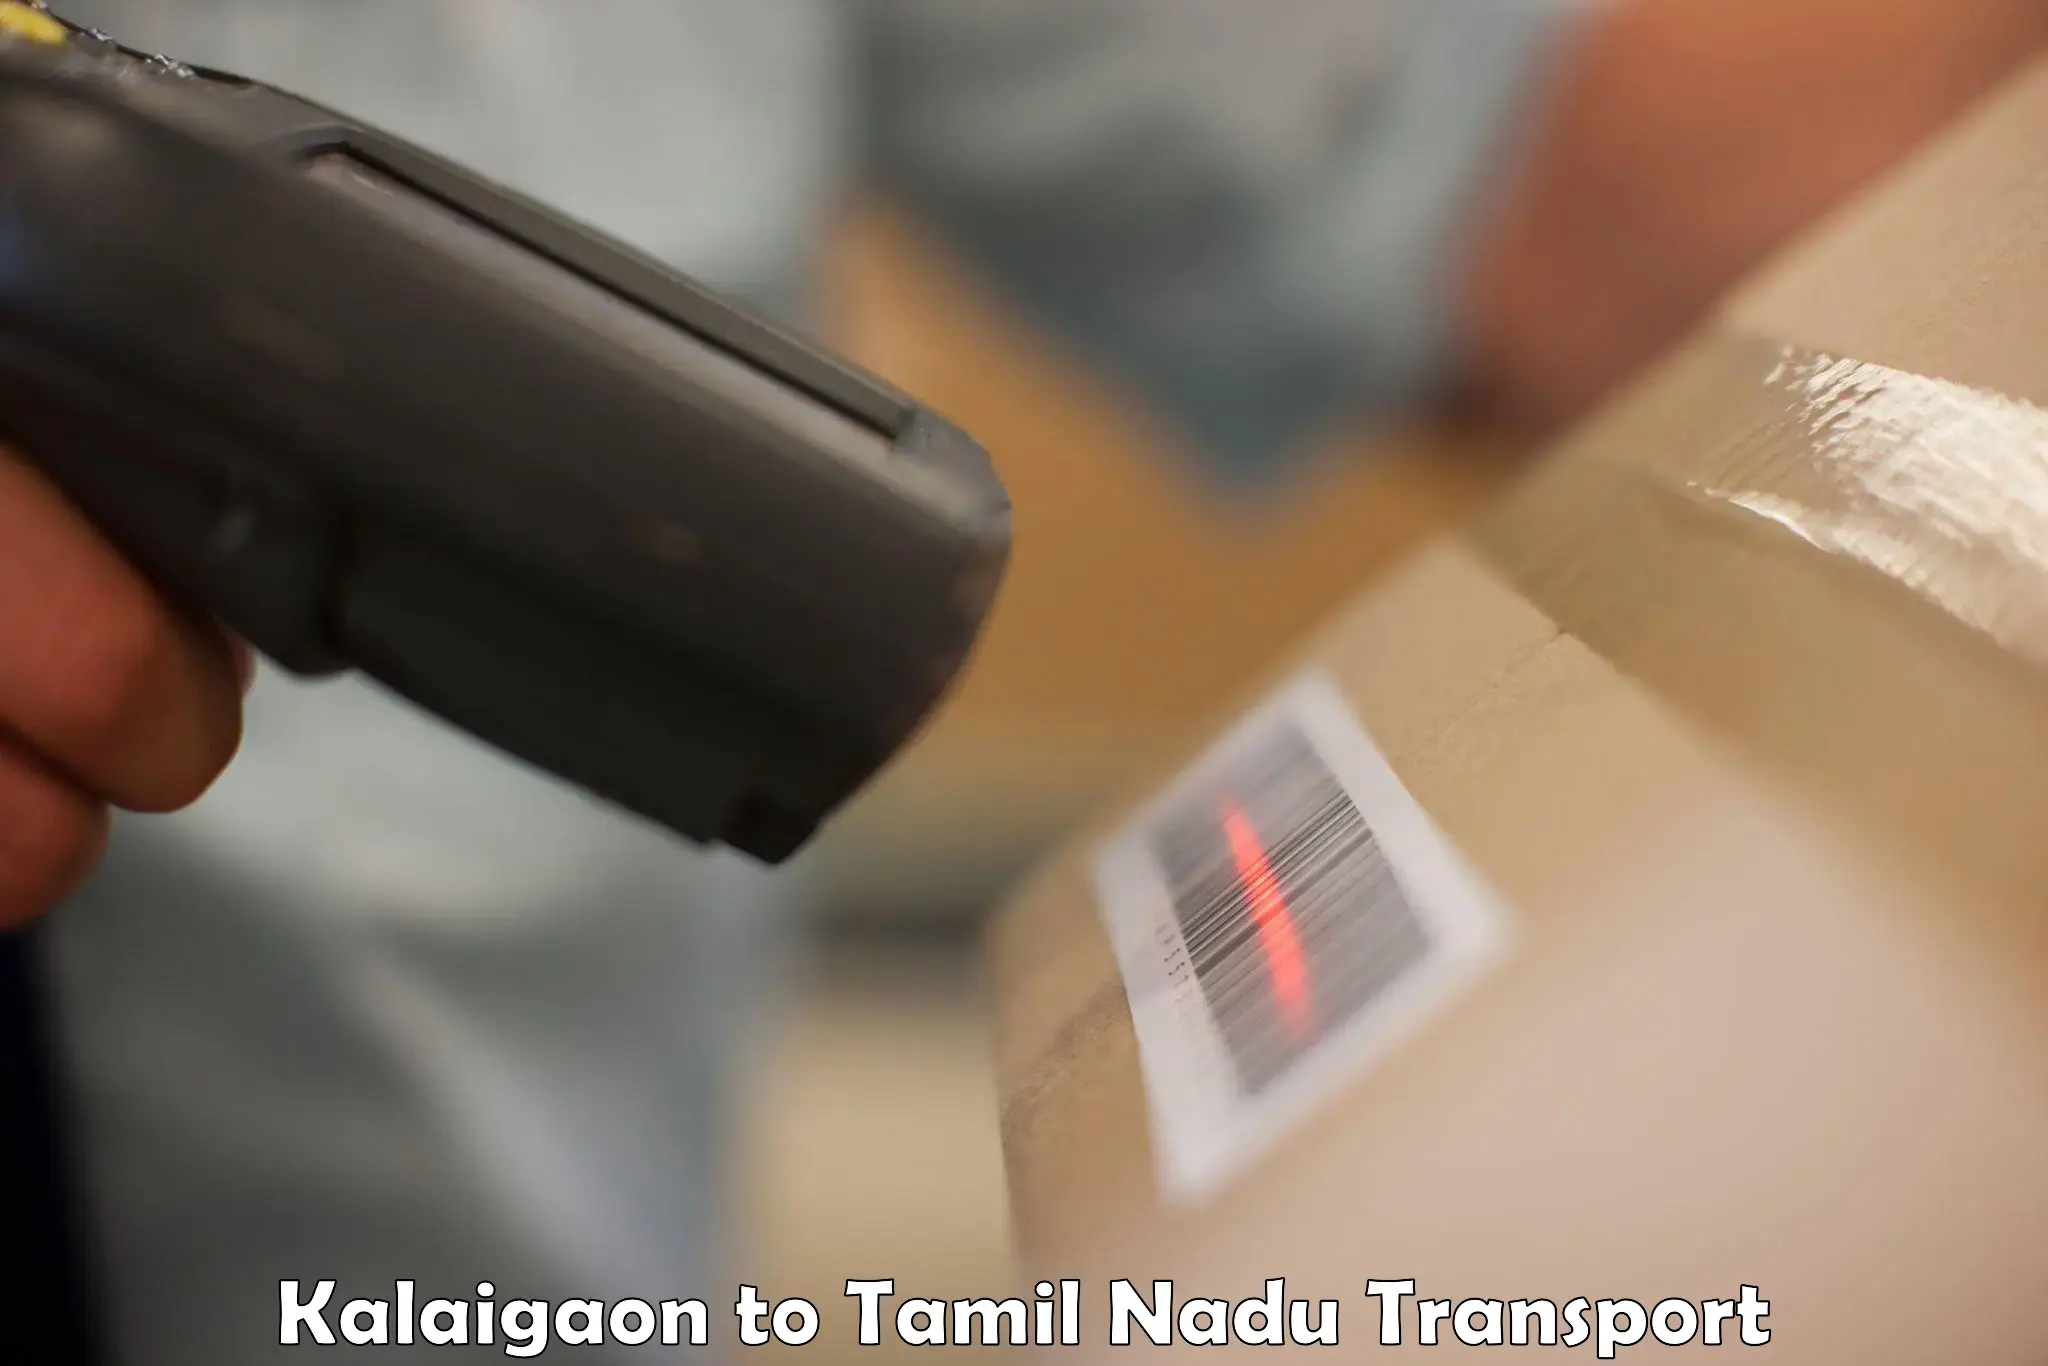 Luggage transport services Kalaigaon to Chennai